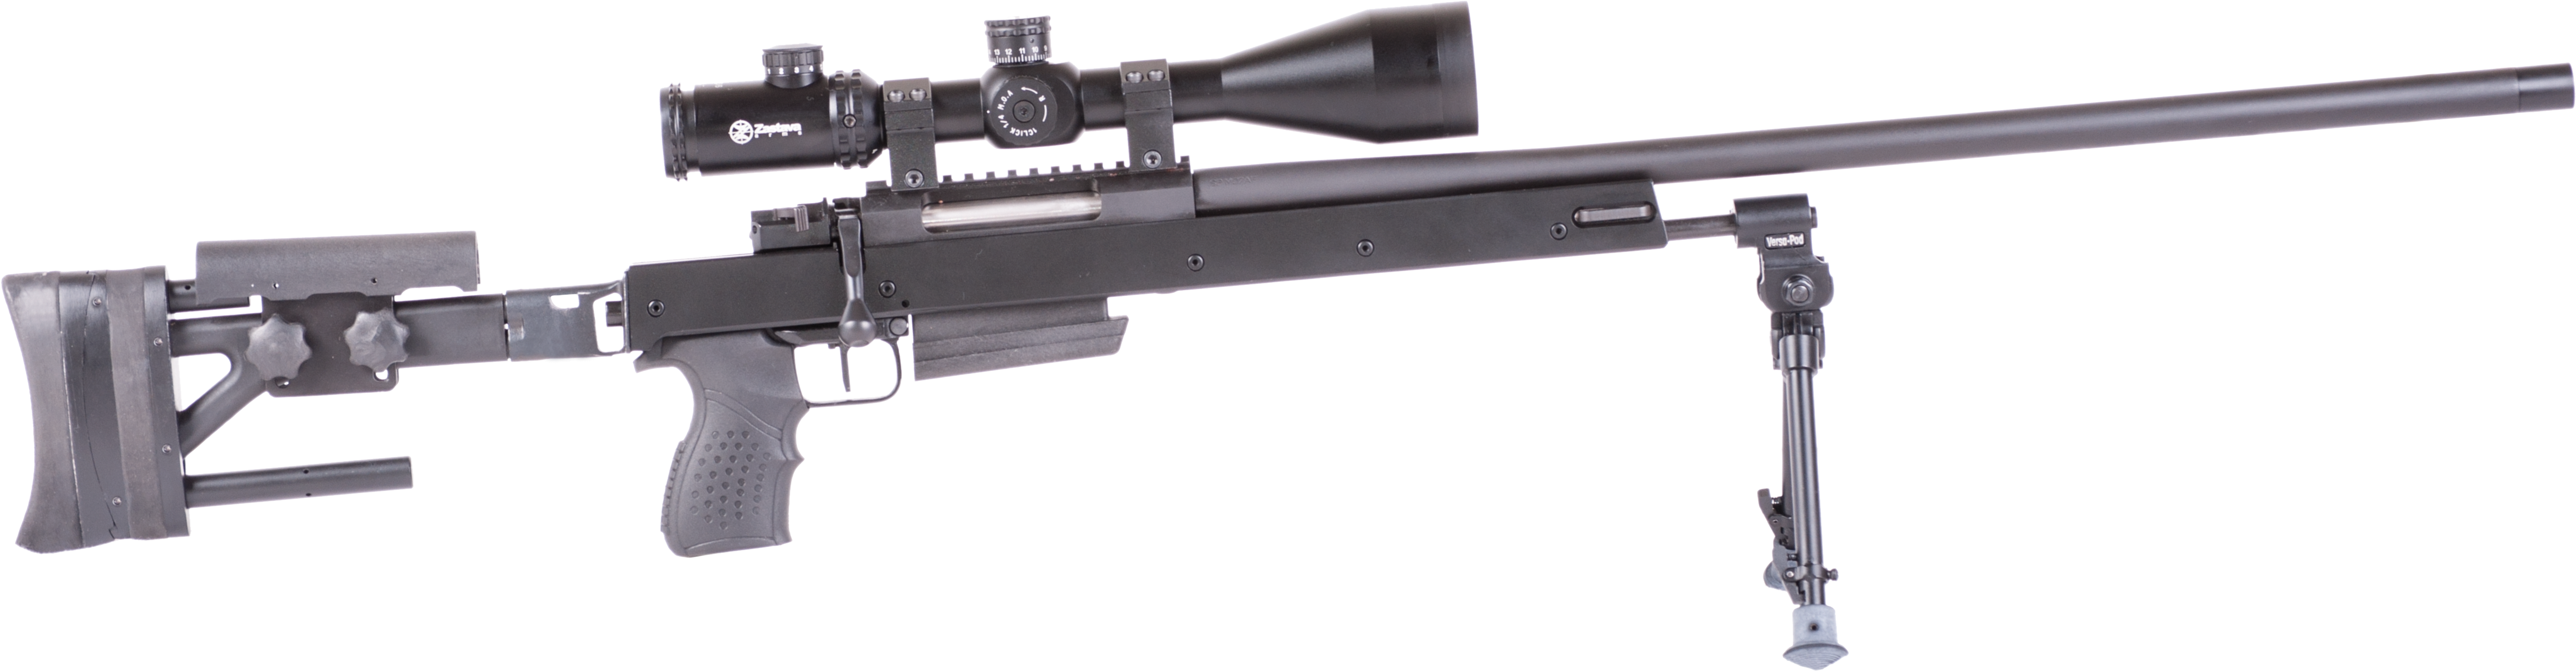 Precision Sniper Rifle Profile PNG